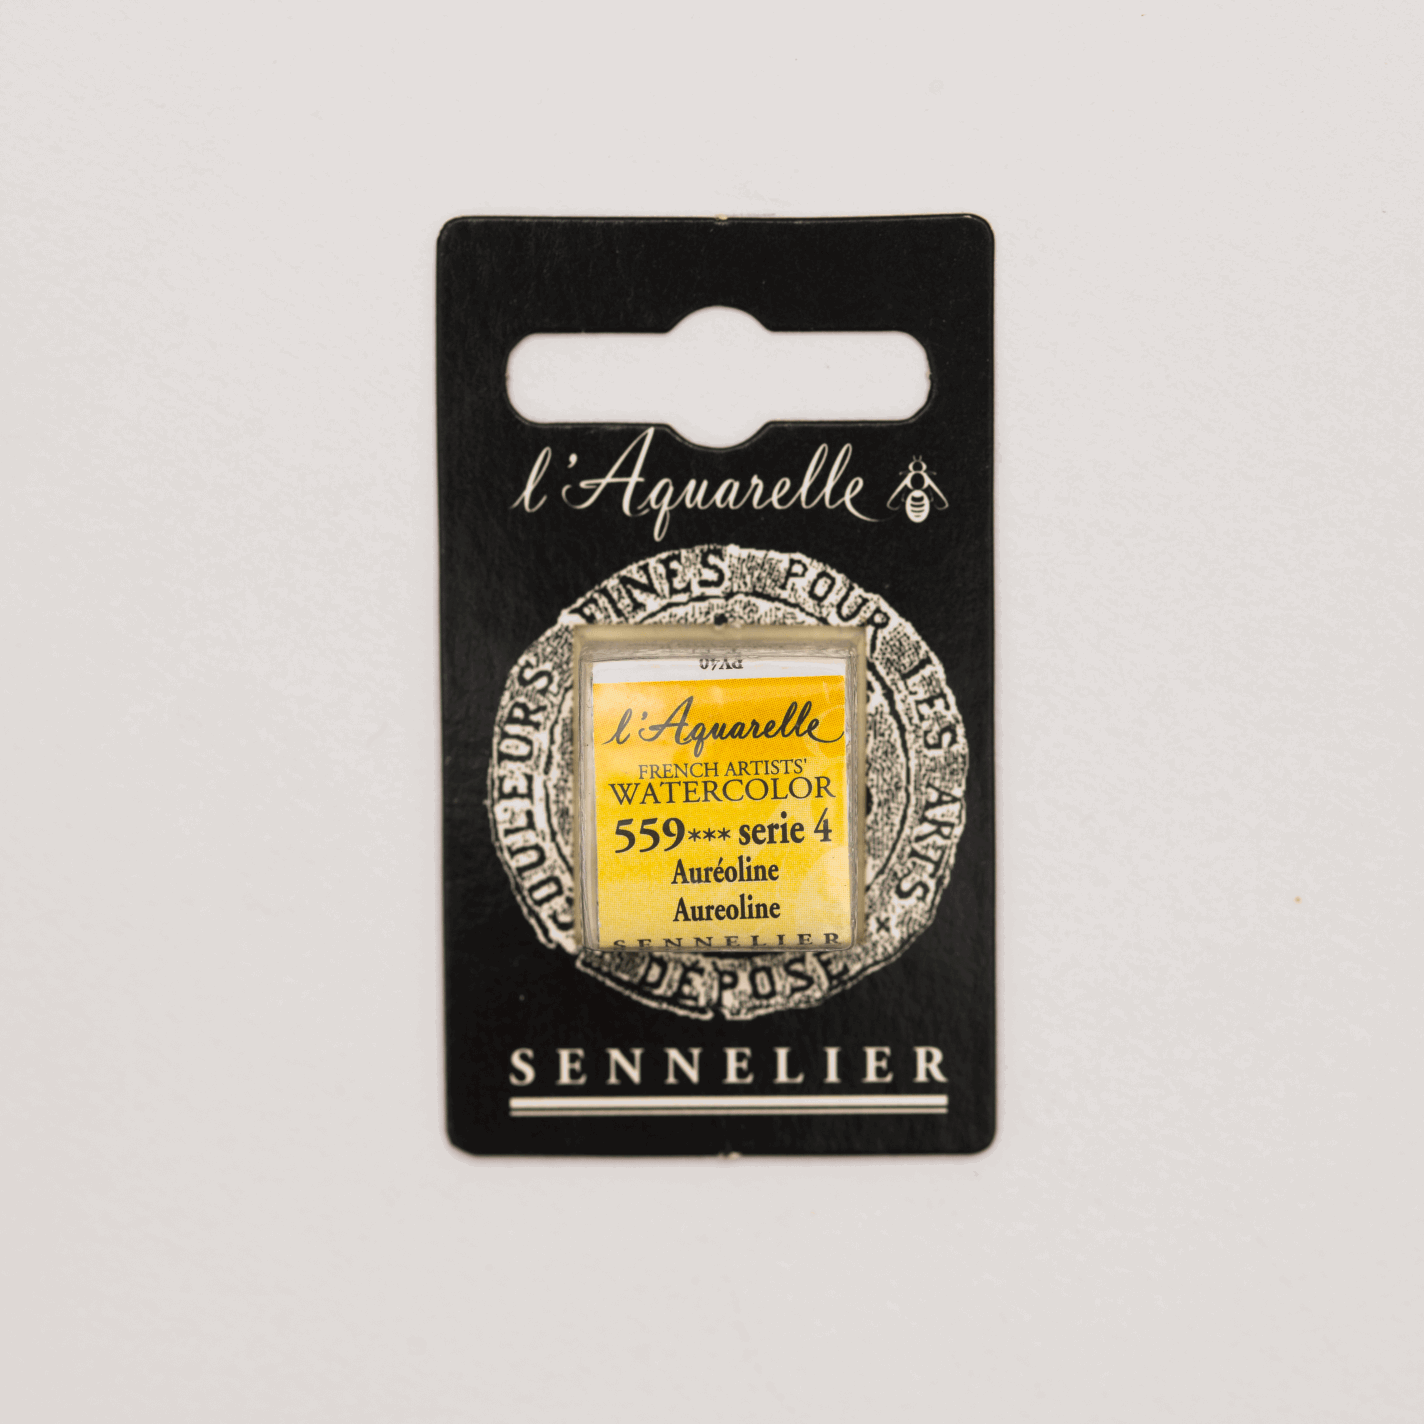 Sennelier Aquarelle pans 1/2 pan Aureoline